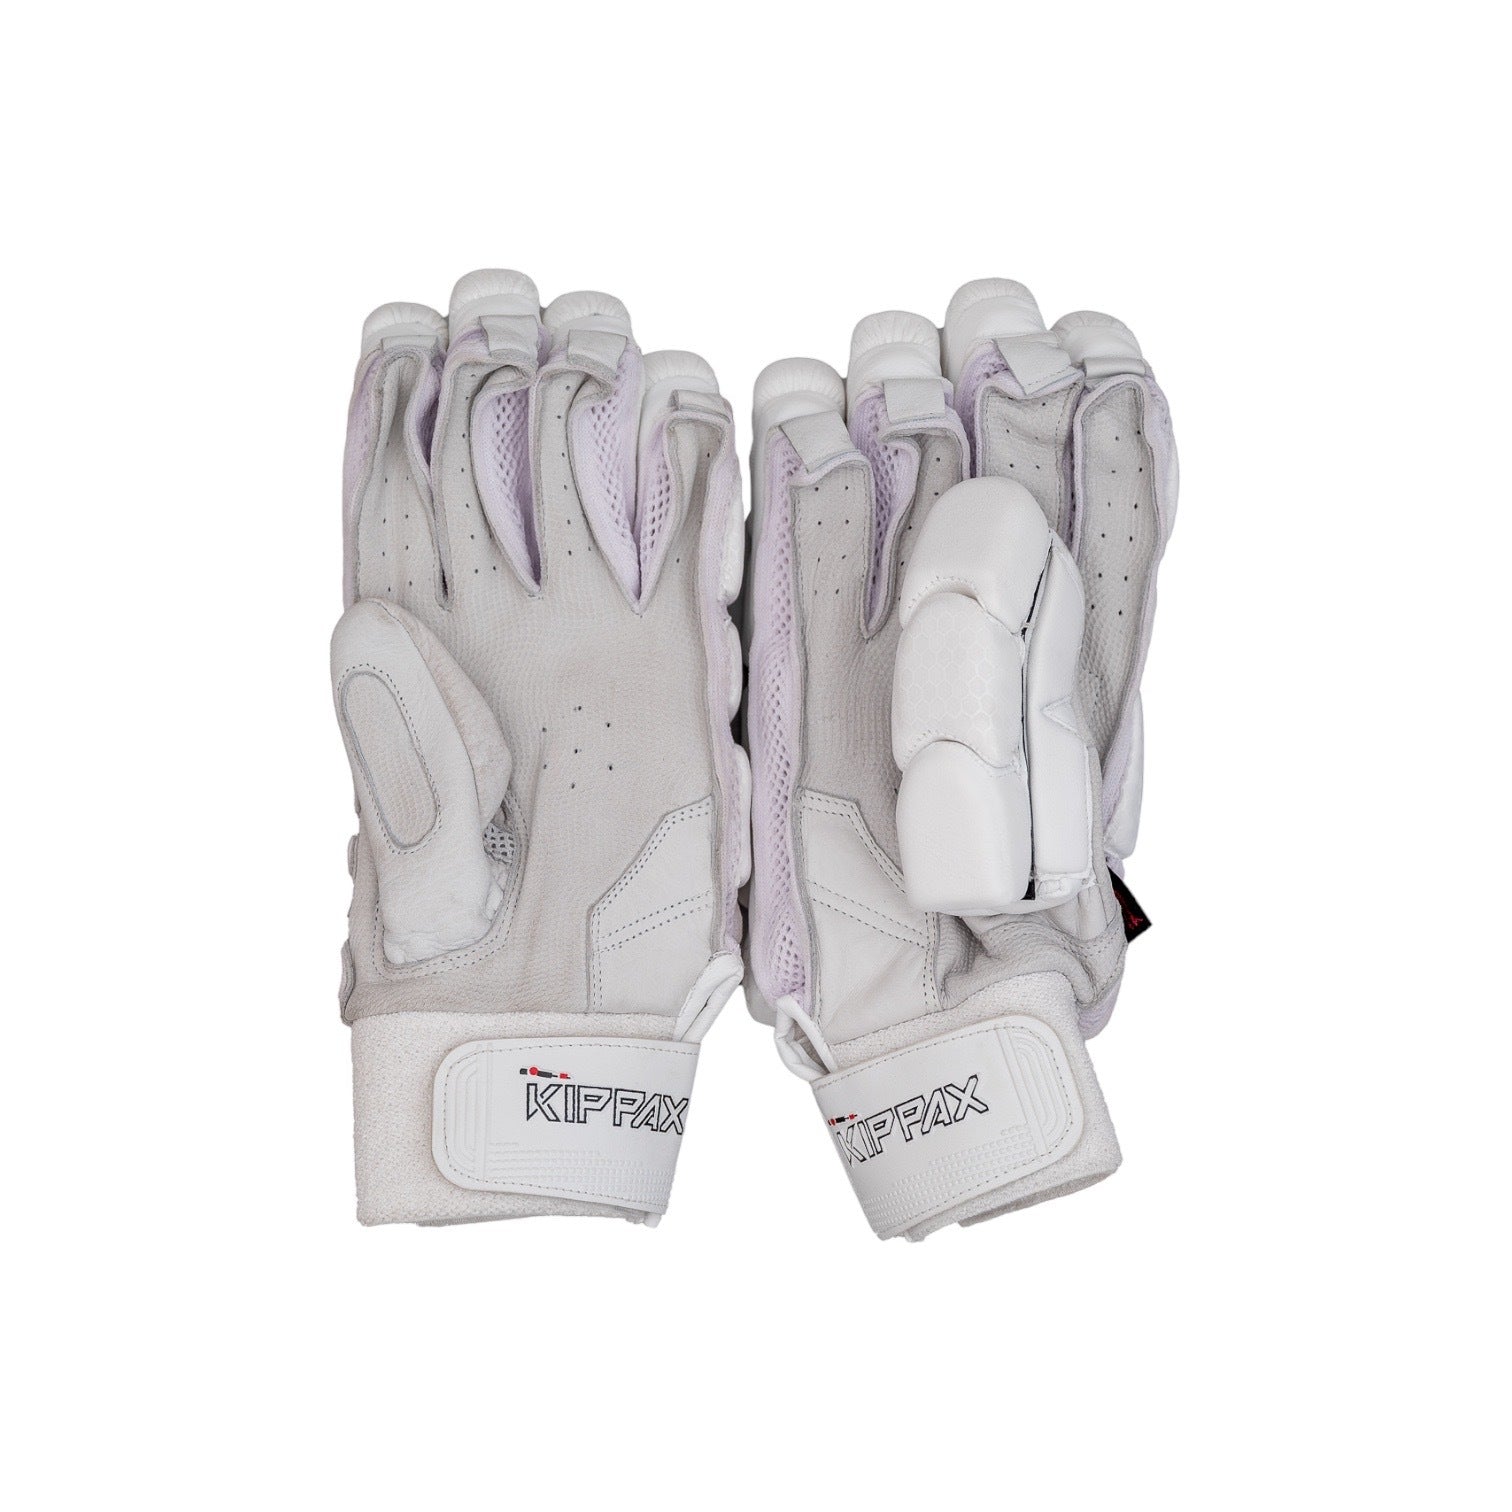 Kippax Adult Batting Gloves